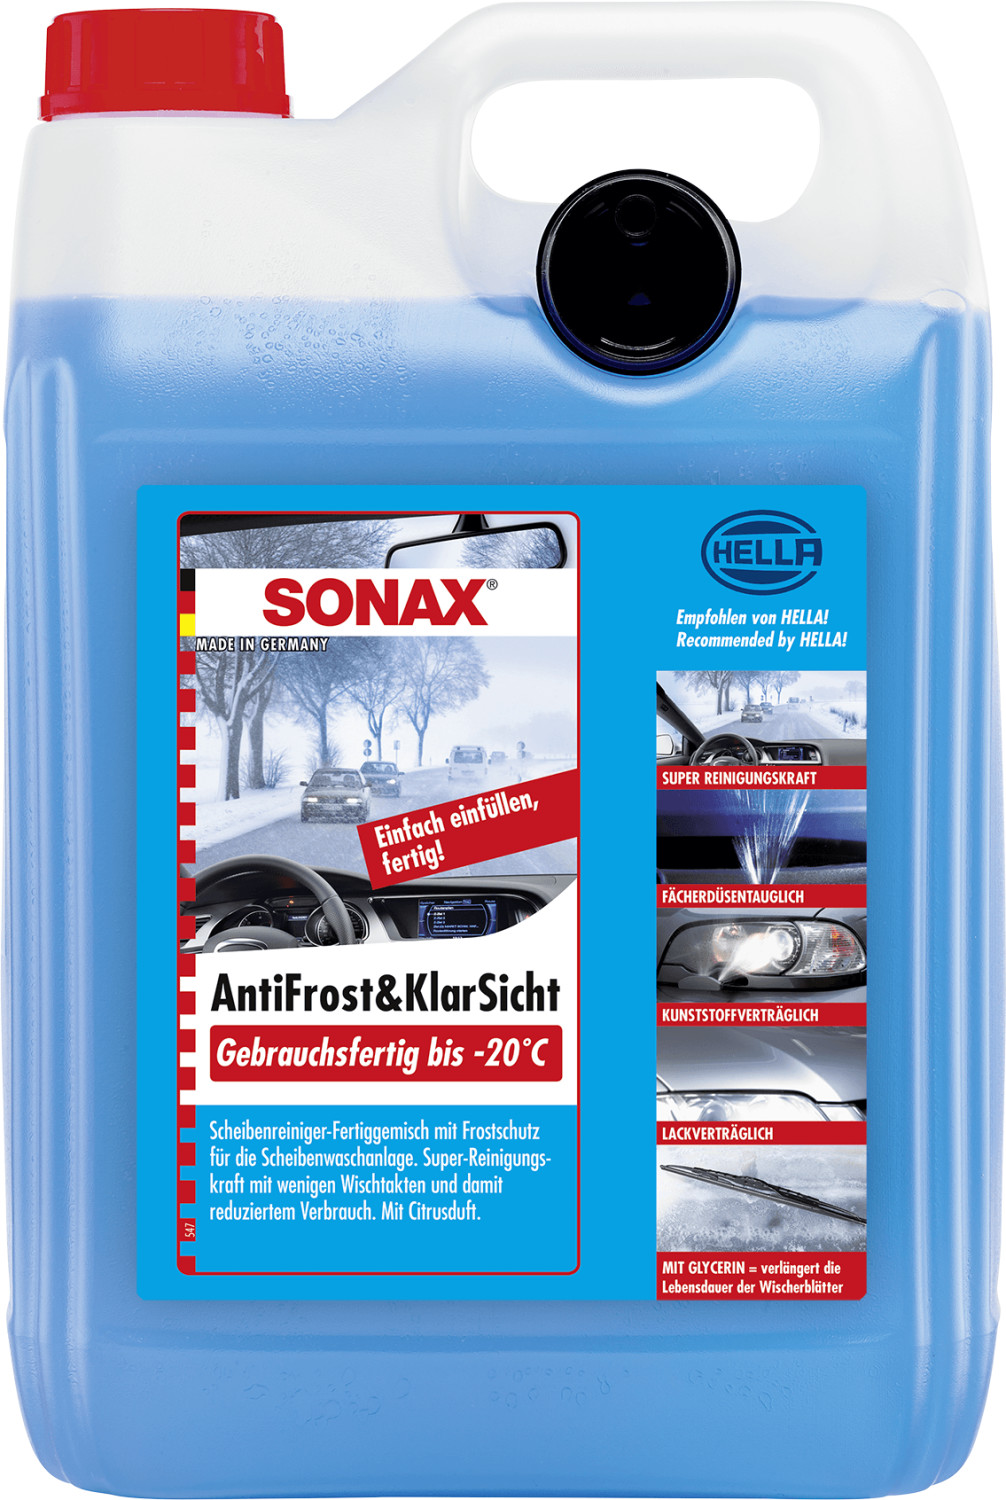 Sonax AntiFrost&KlarSicht gebrauchsfertig (5 l) ab € 11,98